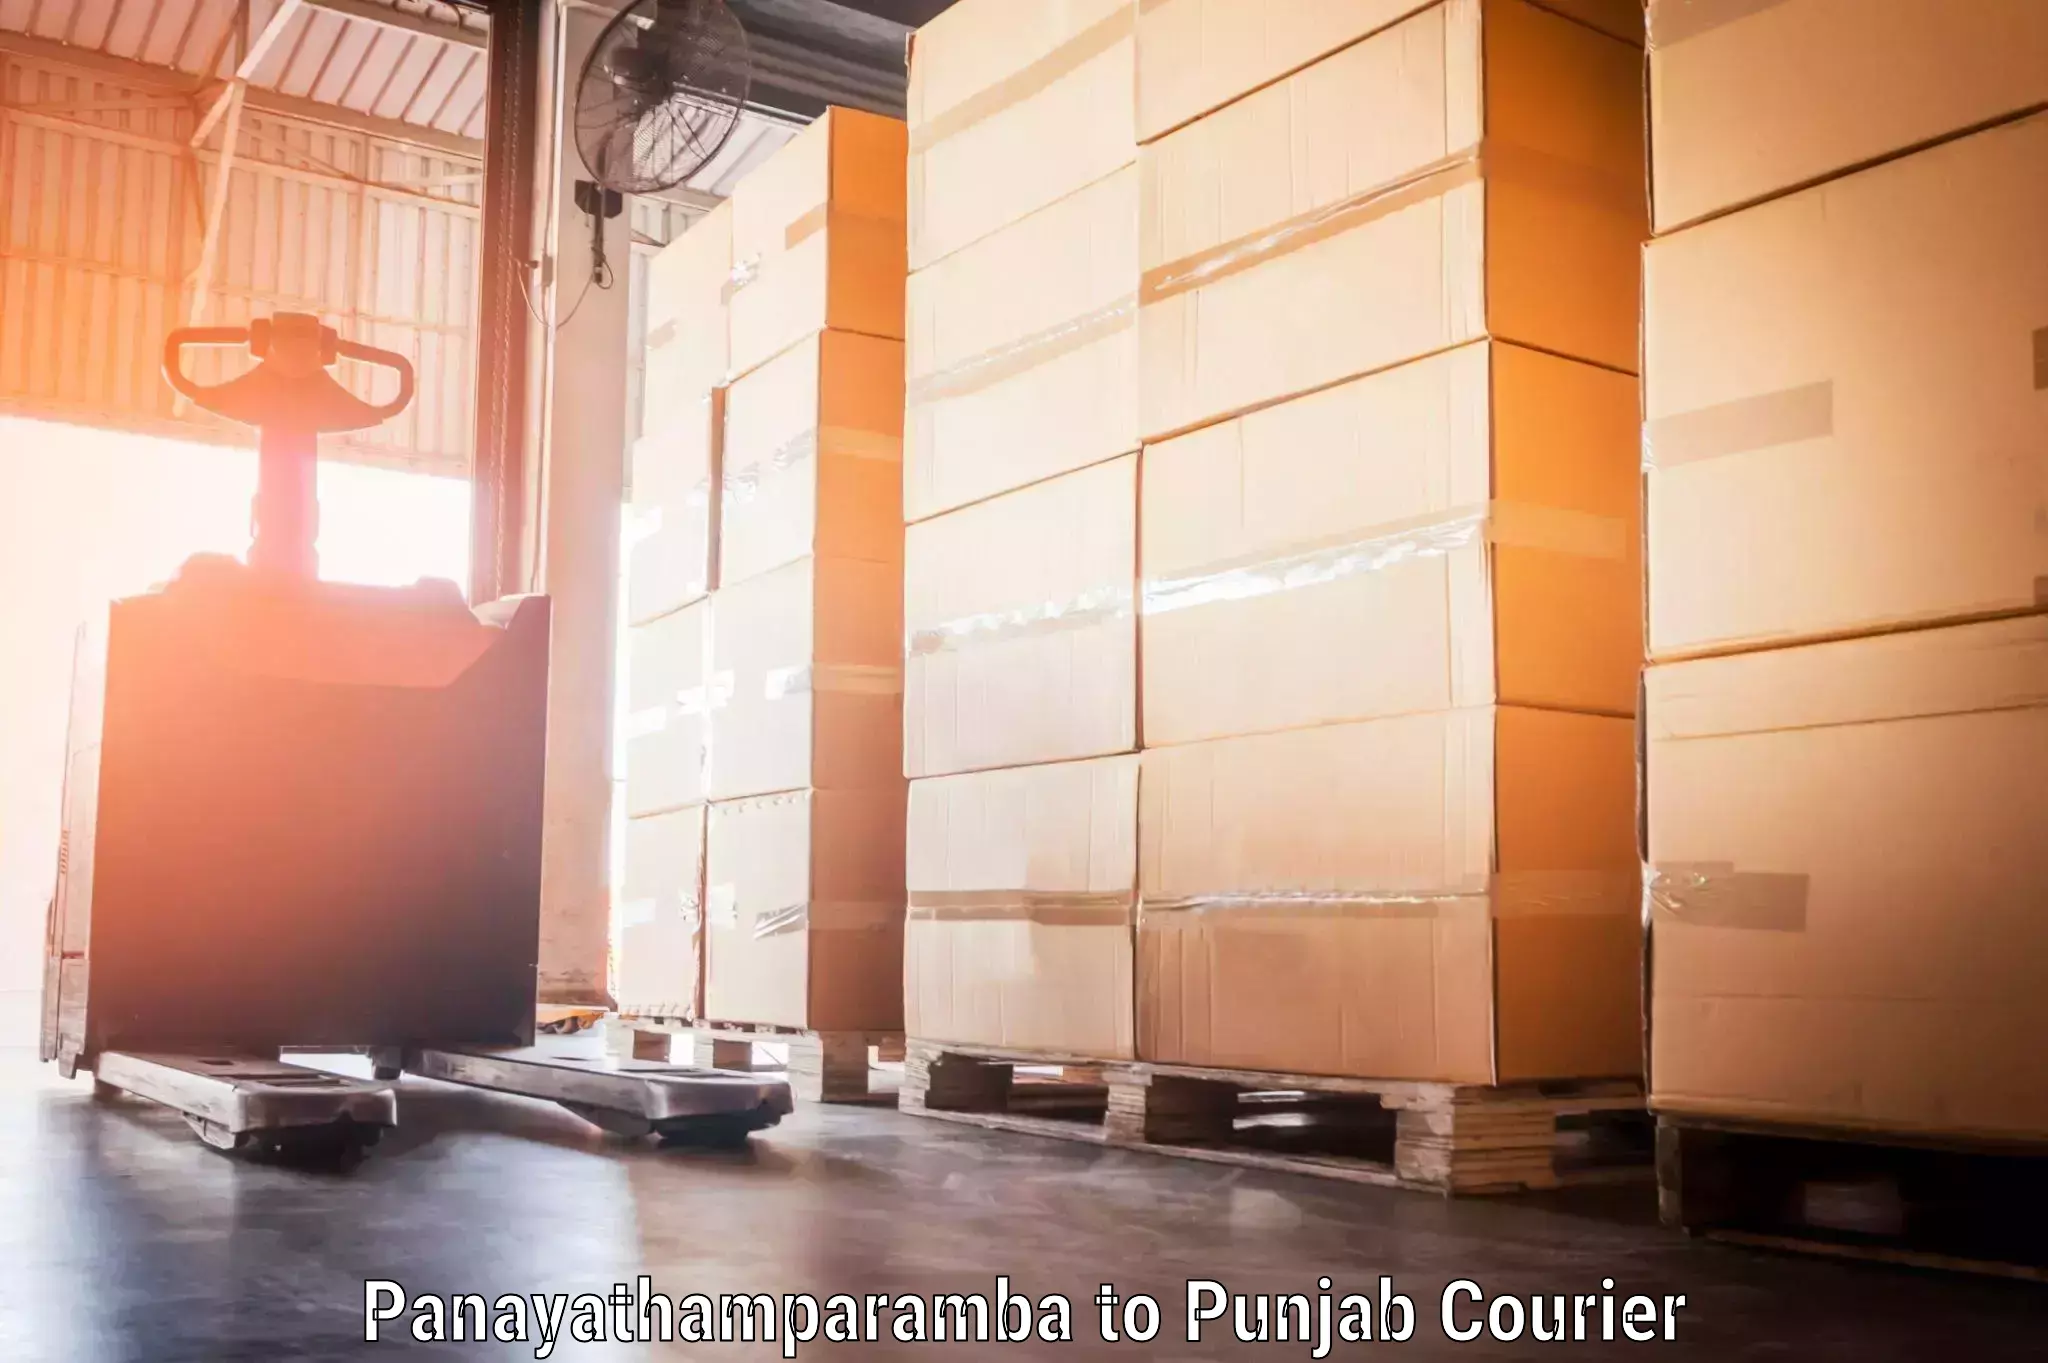 Baggage shipping schedule Panayathamparamba to Punjab